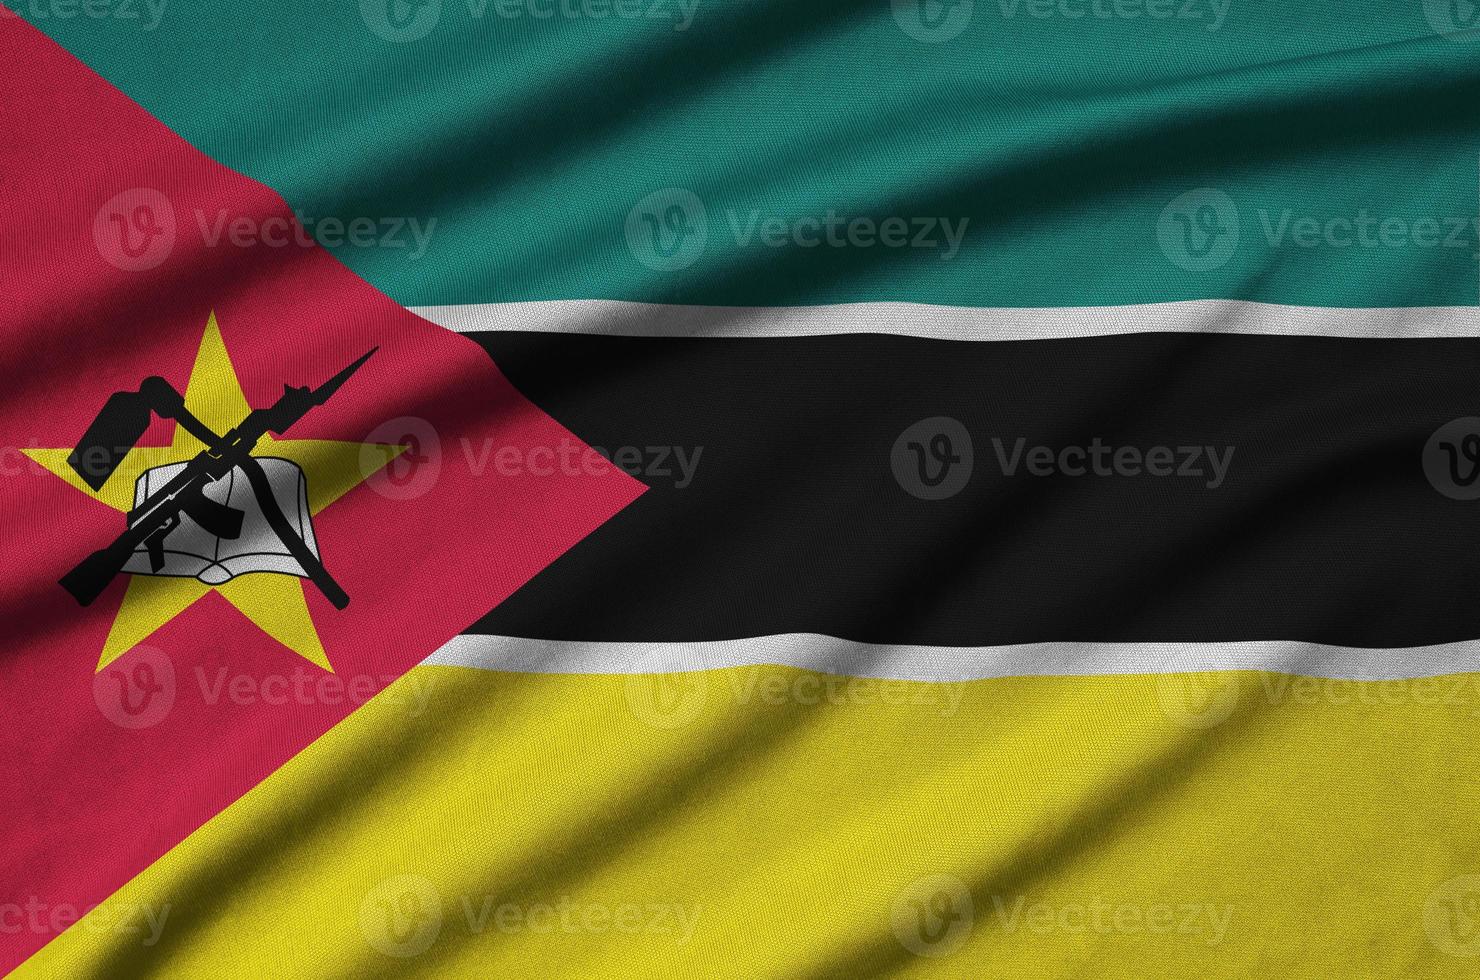 moçambique flagga är avbildad på en sporter trasa tyg med många veck. sport team baner foto